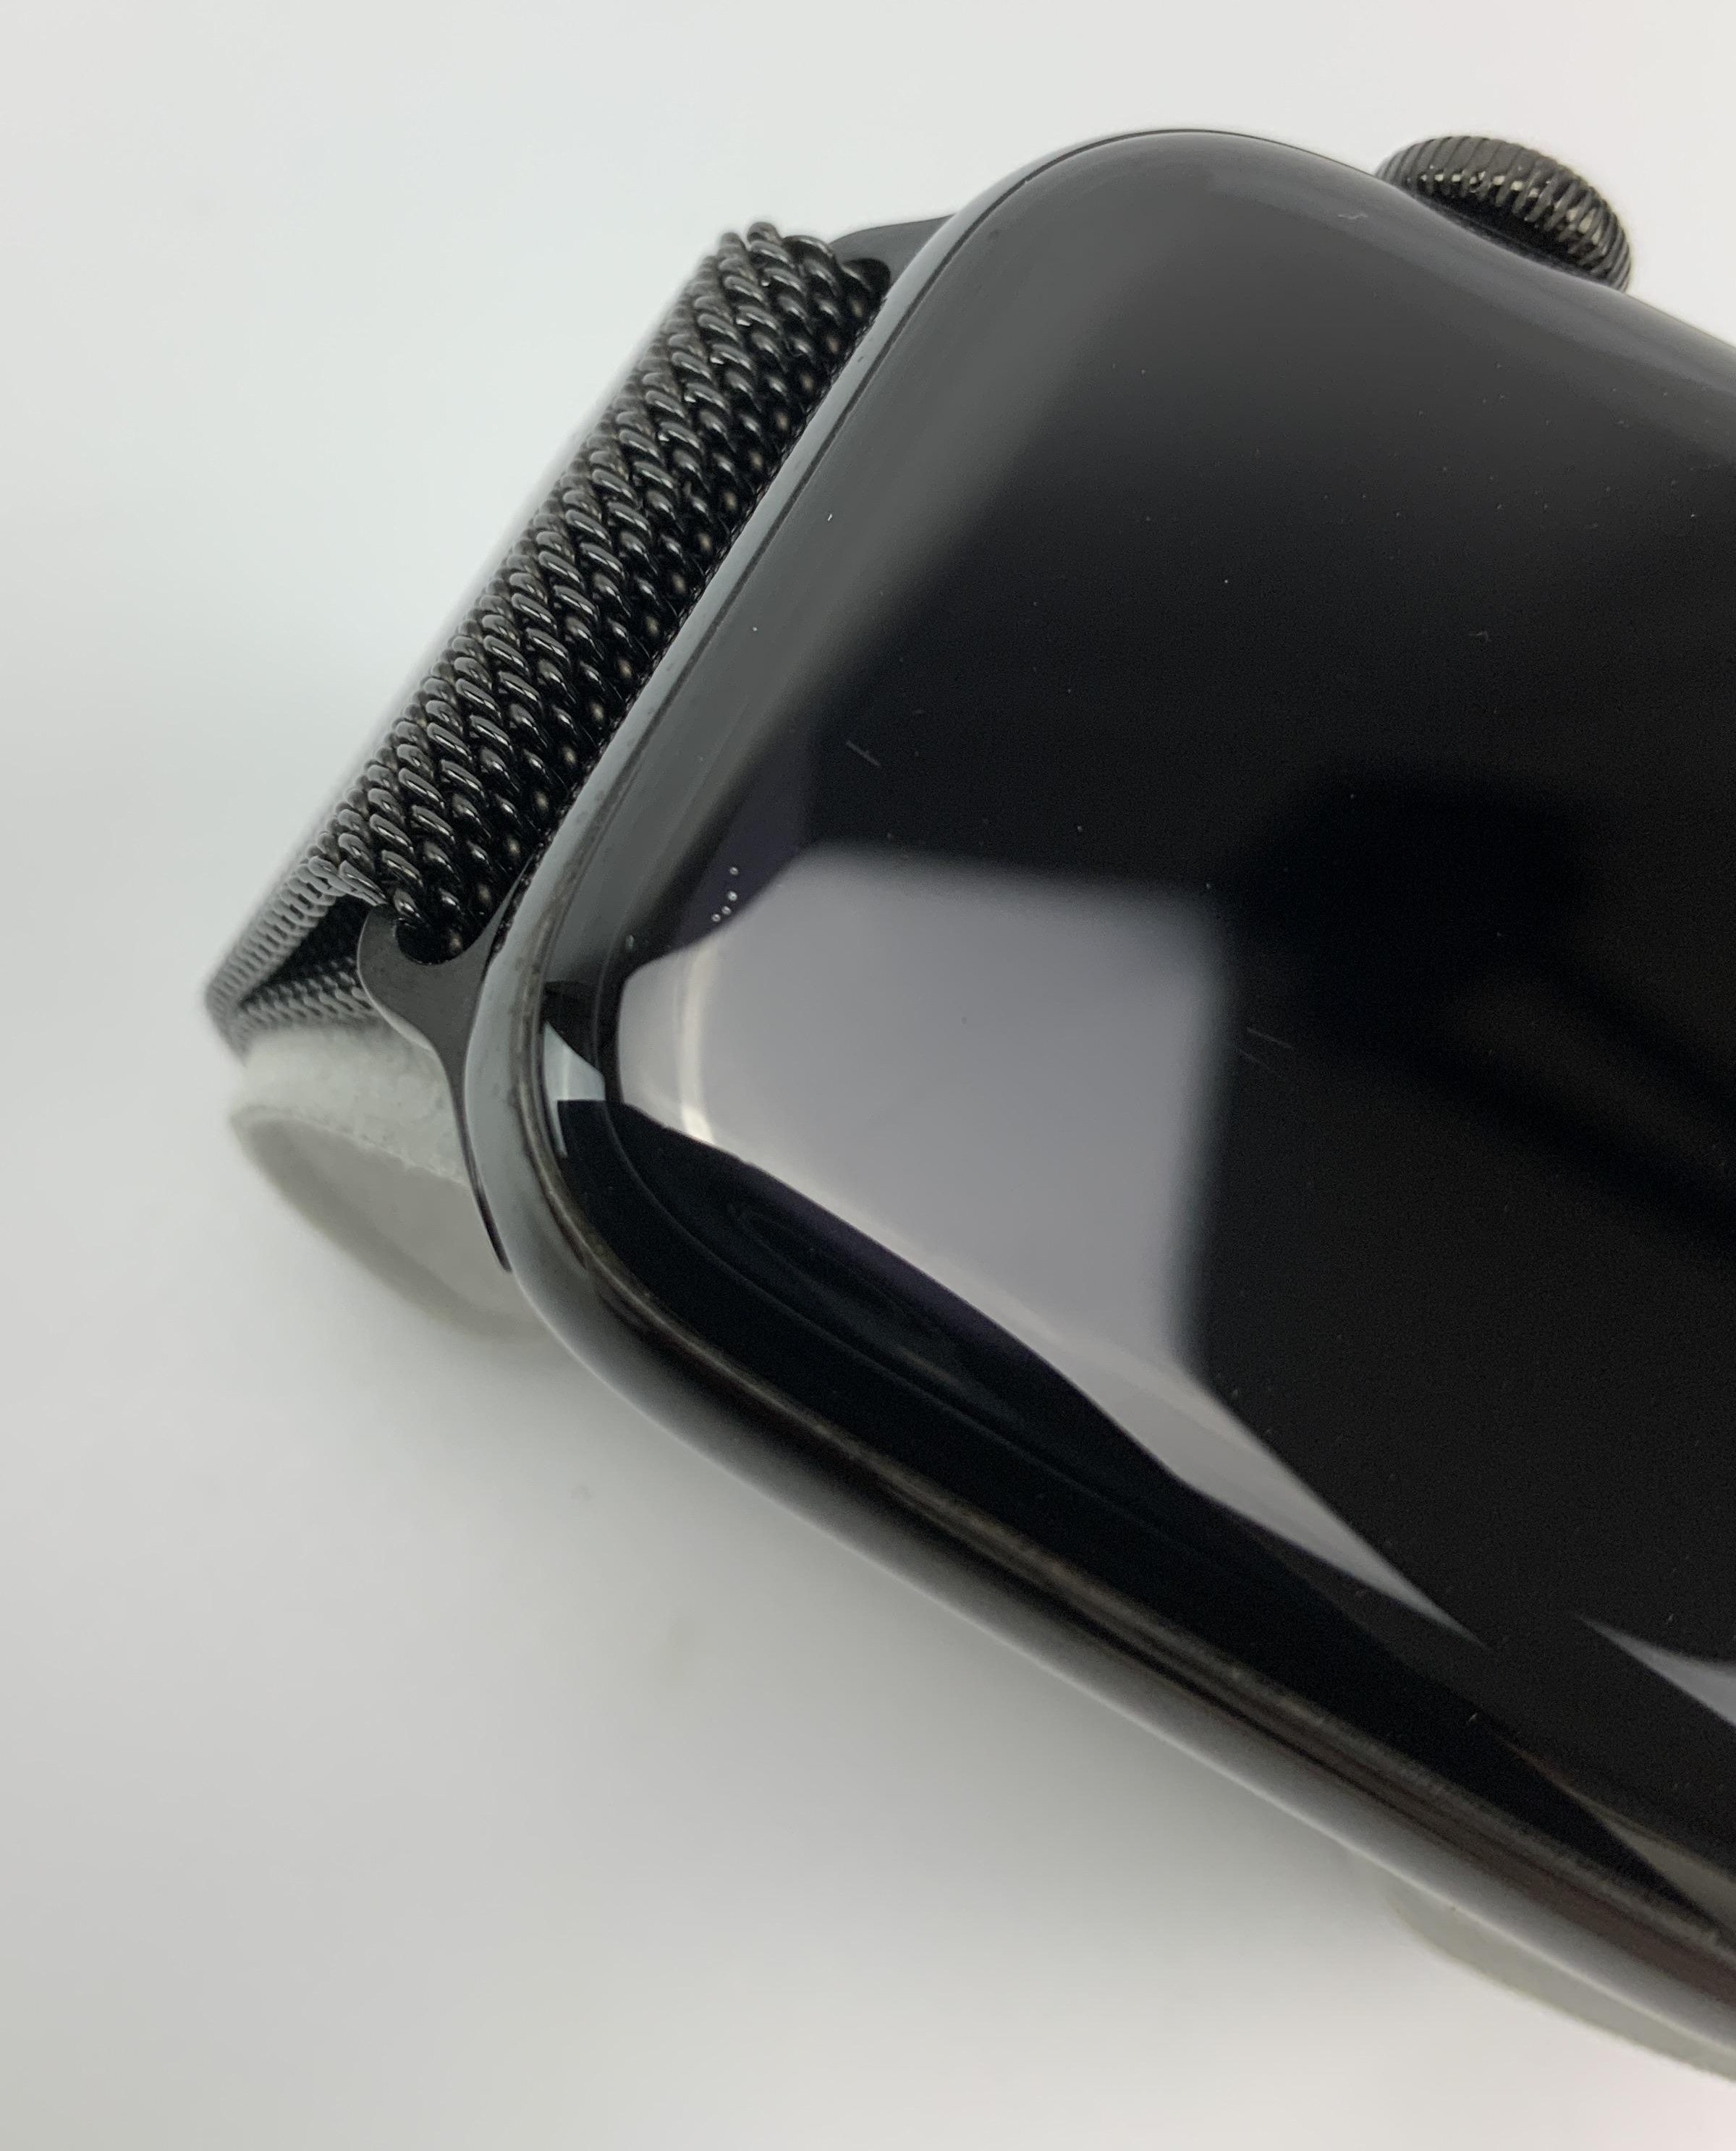 Watch Series 4 Steel Cellular (44mm), Space Black, Space Black Milanese Loop, Kuva 4